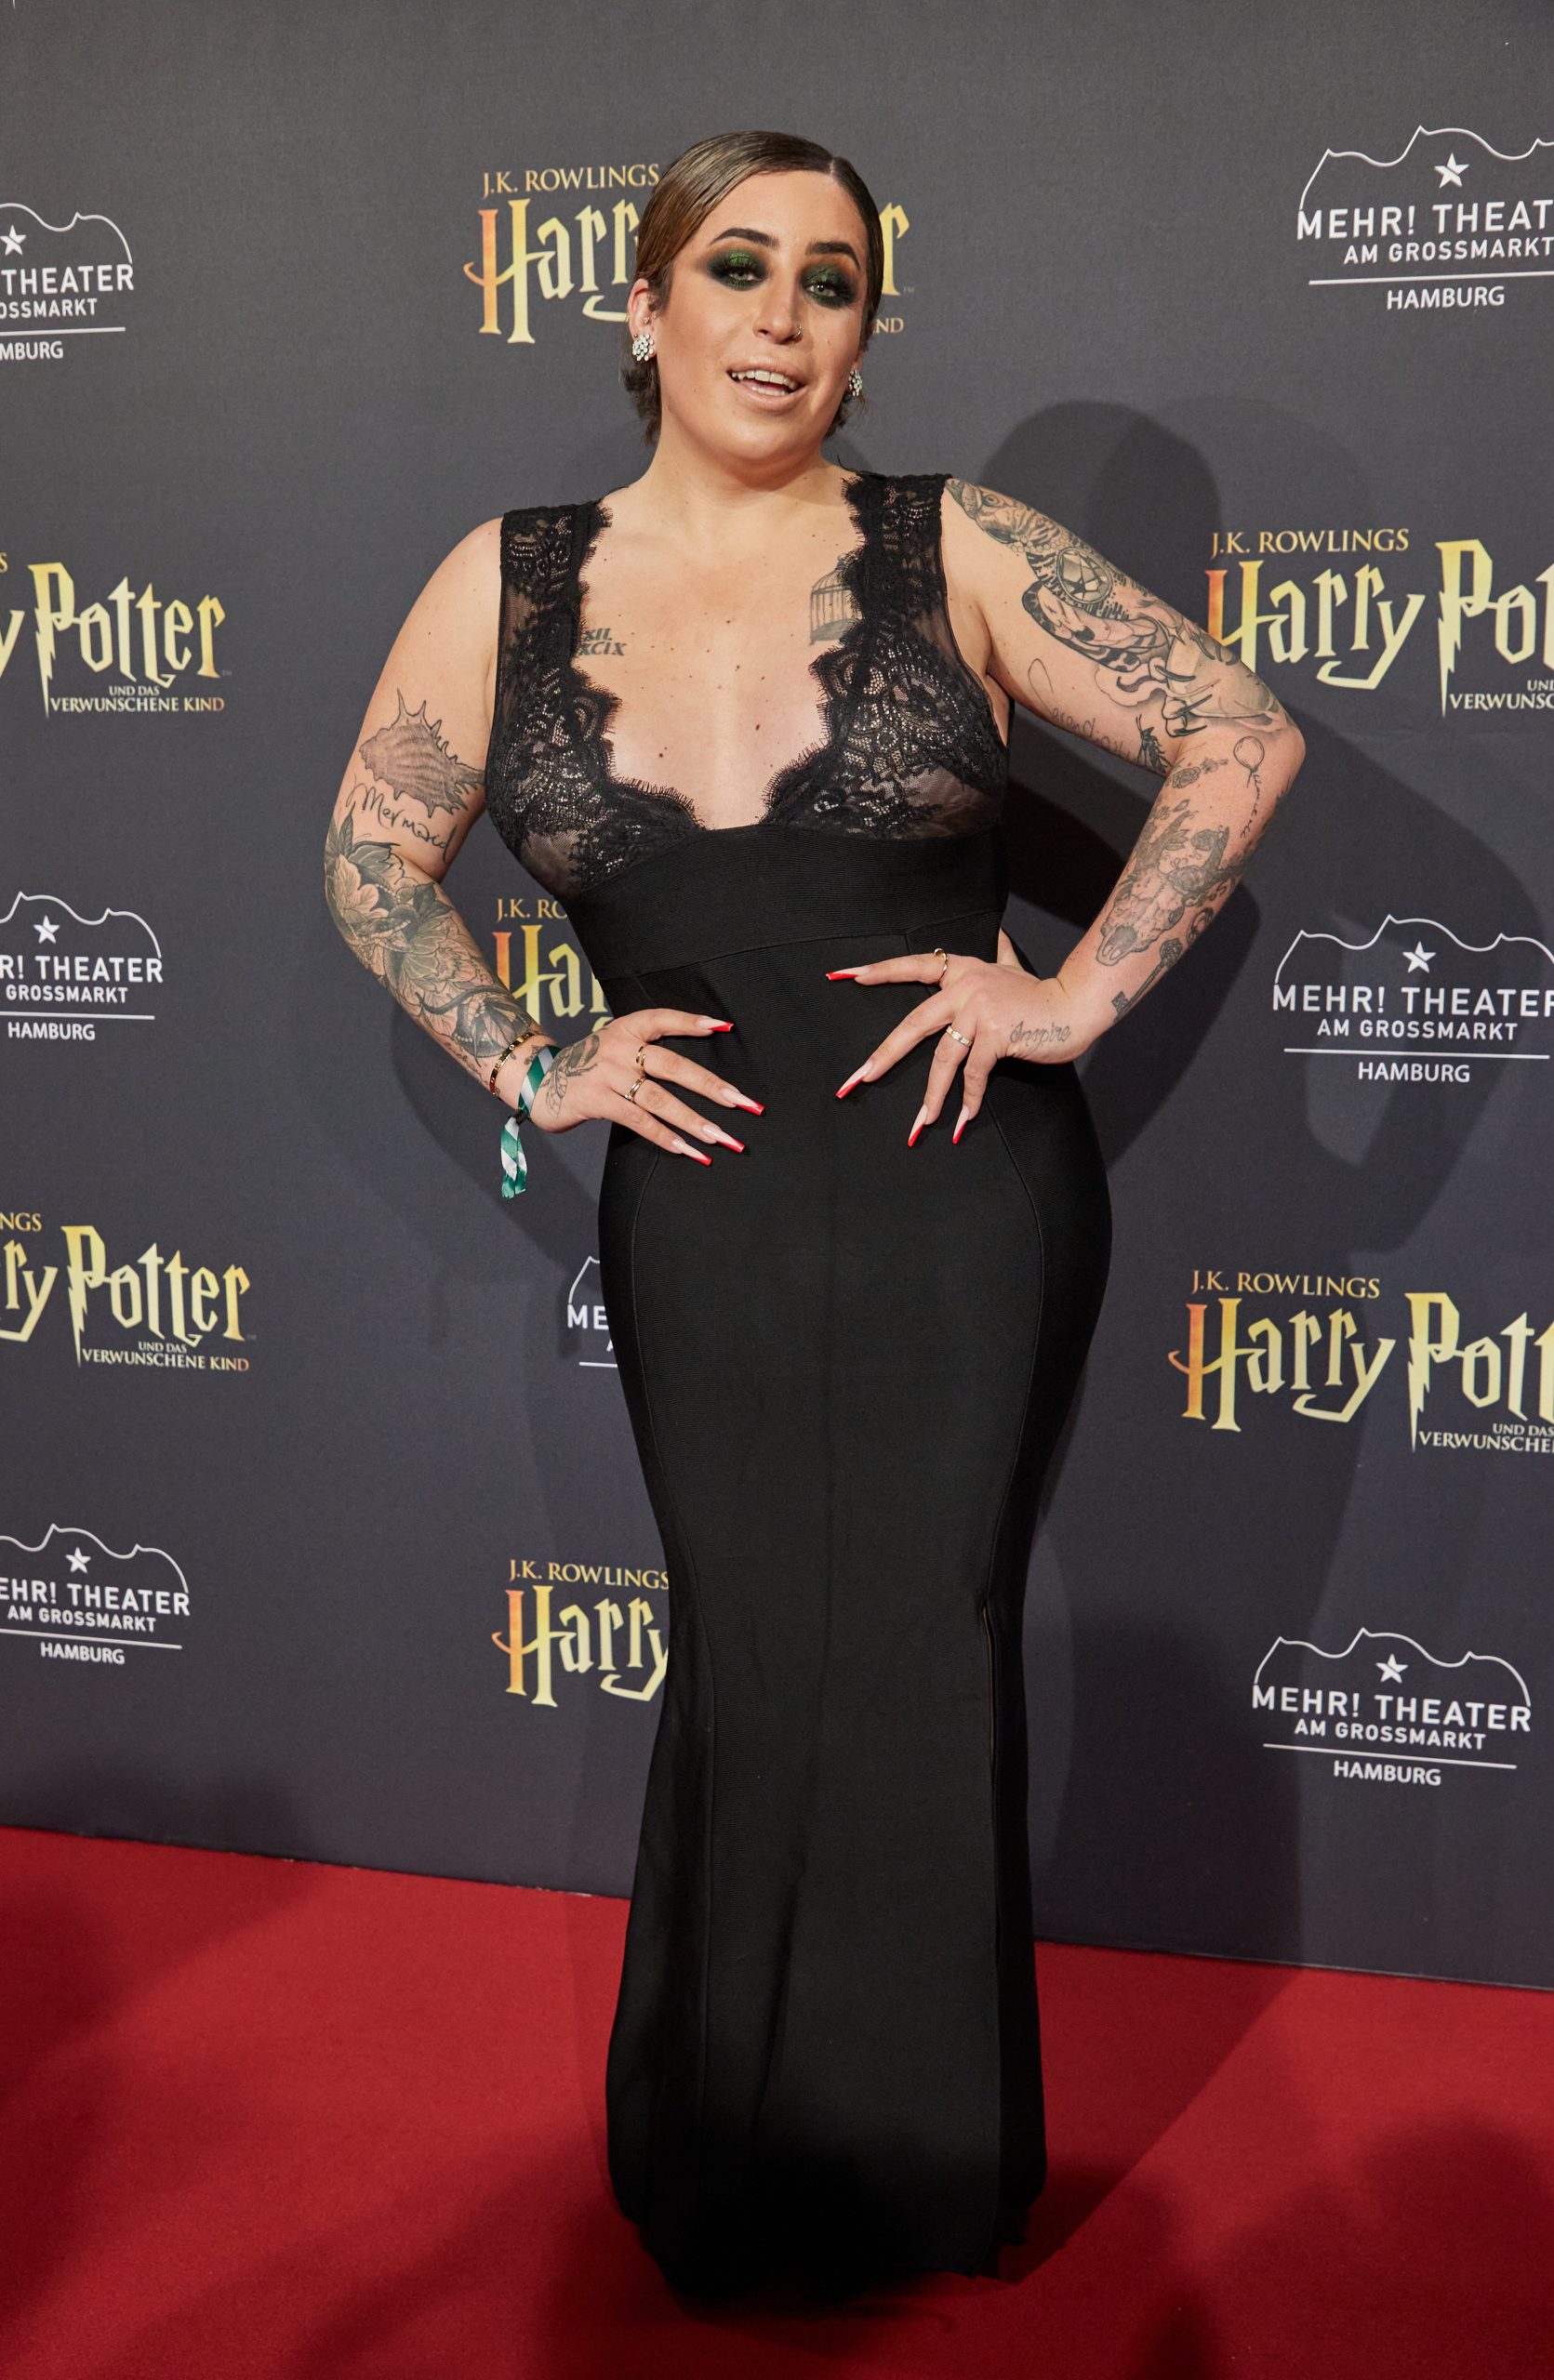 Influencerin Jolina in Hamburg bei der Deutschlandpremiere des Theaterstücks "Harry Potter und das verwunschene Kind".